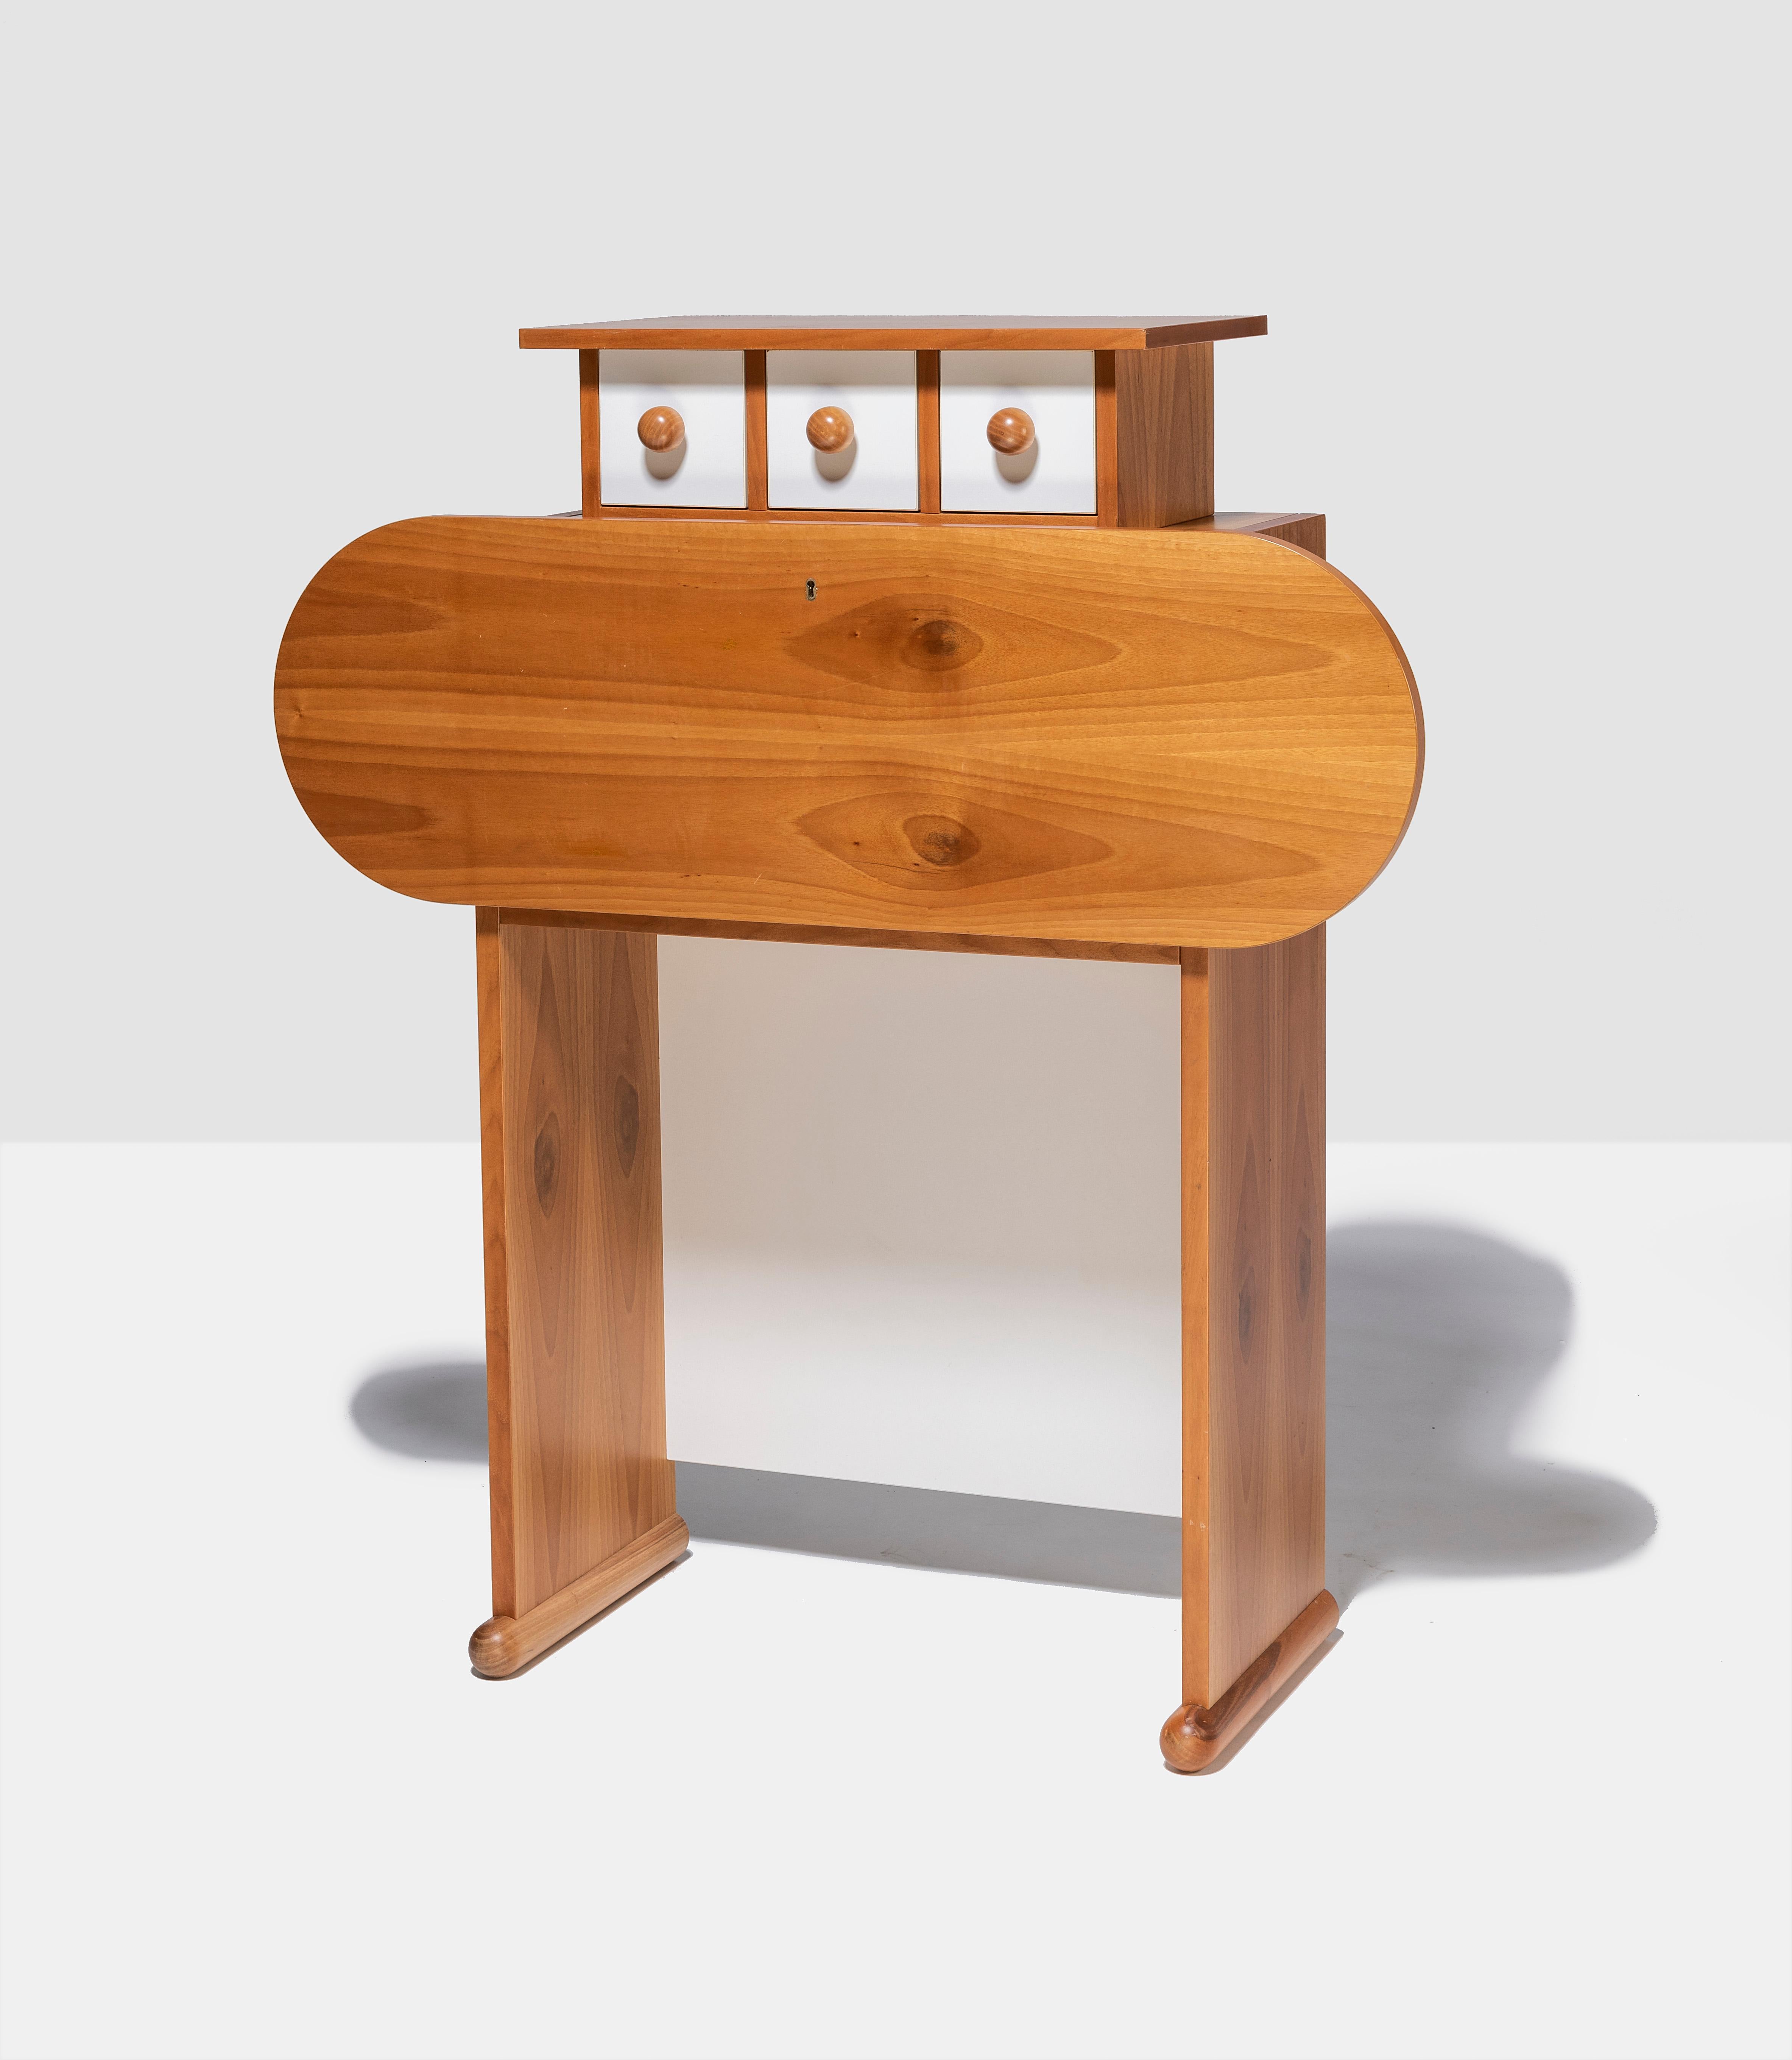 Rare Ettore Sottsass for Poltranova Barbarella desk. Tranquilla variant. Designed 1964-1965, Agliana Italy.